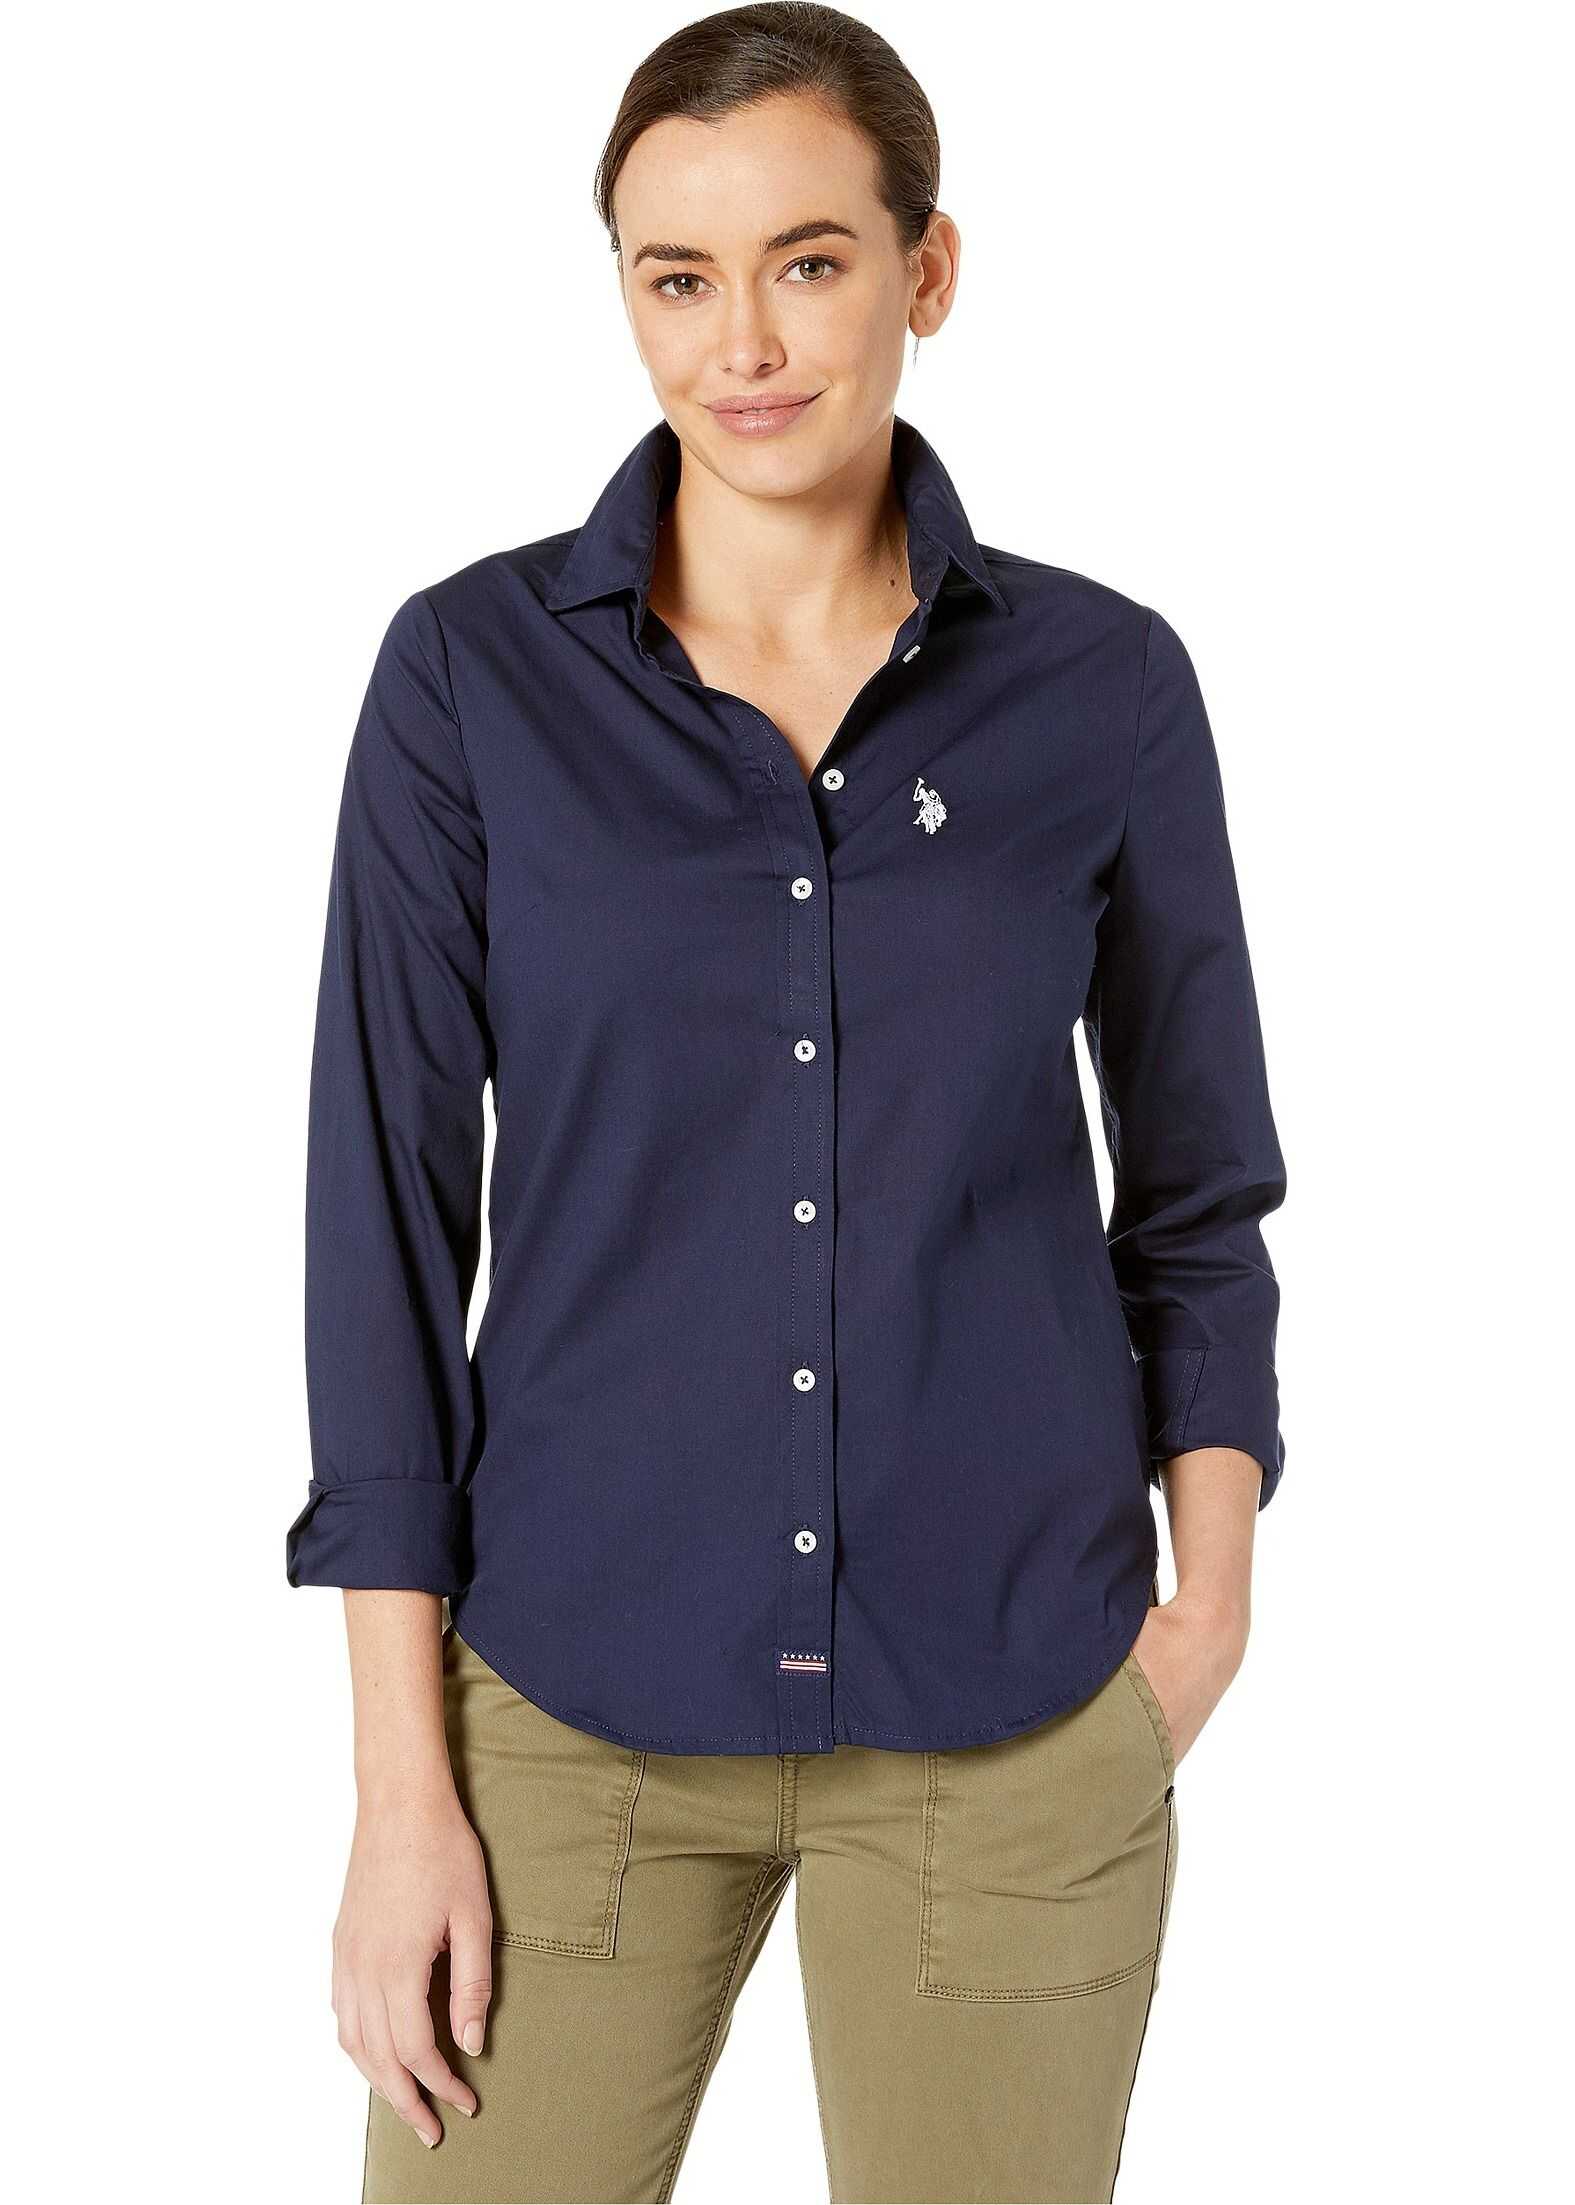 U.S. POLO ASSN. Long Sleeve Solid Woven Shirt Evening Blue